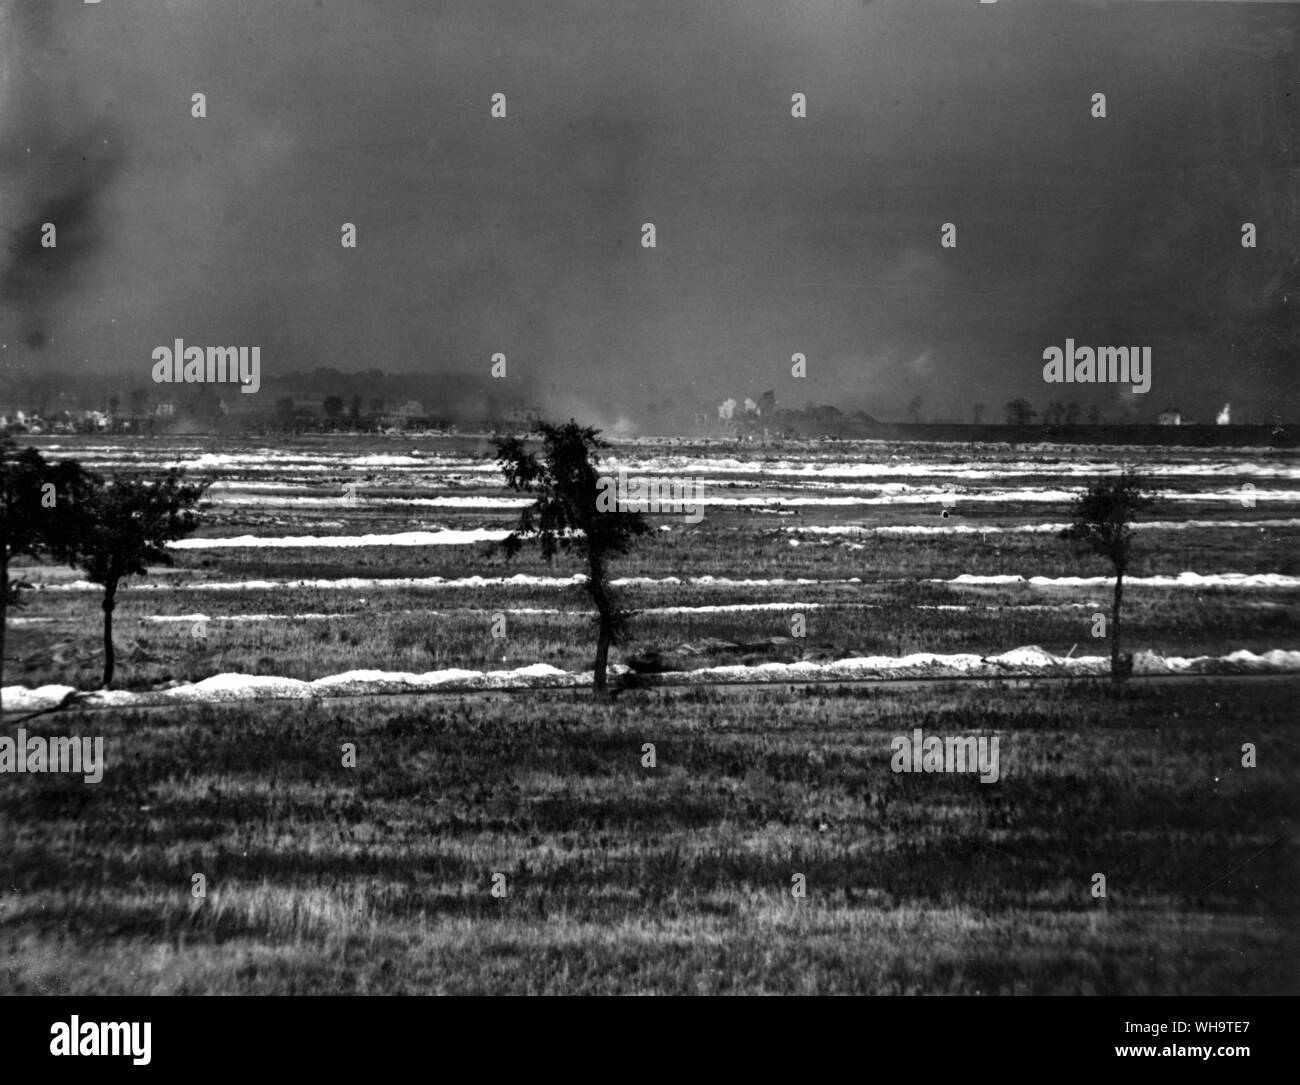 WW1: Frankreich: Britische Angriff auf die Hohenzollern Redoute, 13. Oktober 1915 von der North Midland (T.W) 46th Division, die Gräben hinter Vermelles-Hulloch Straße und im Graben der Redoute (Loos) erfasst. Foto zeigt: eine Wolke von Rauch und Gas in der Mitte auf der linken Seite. platzen Tanks in der Mitte und auf der rechten Seite. Britische Gräben und Ansätze verfolgt, die von der Chalk die ausgegraben wurde. Fosse 8 kann nur durch die Splitter platzen in der Mitte gemacht werden. Die Schanze ist diese Seite von Fosse 8. Stockfoto